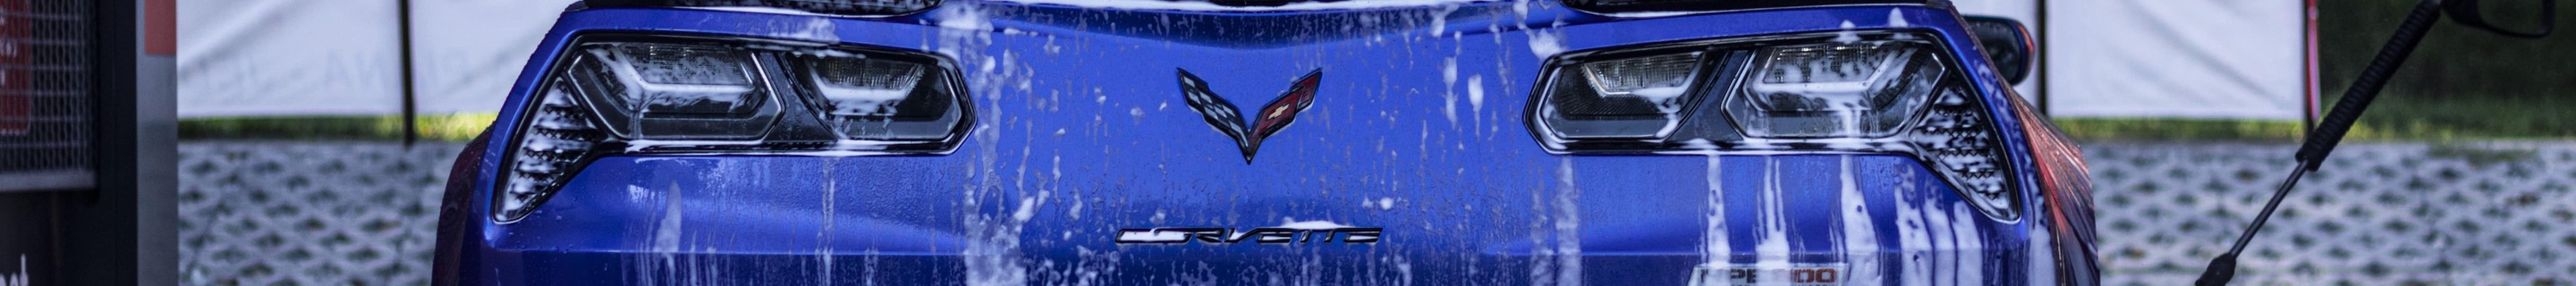 Chevrolet Corvette C7 Z06 Hennessey HPE850